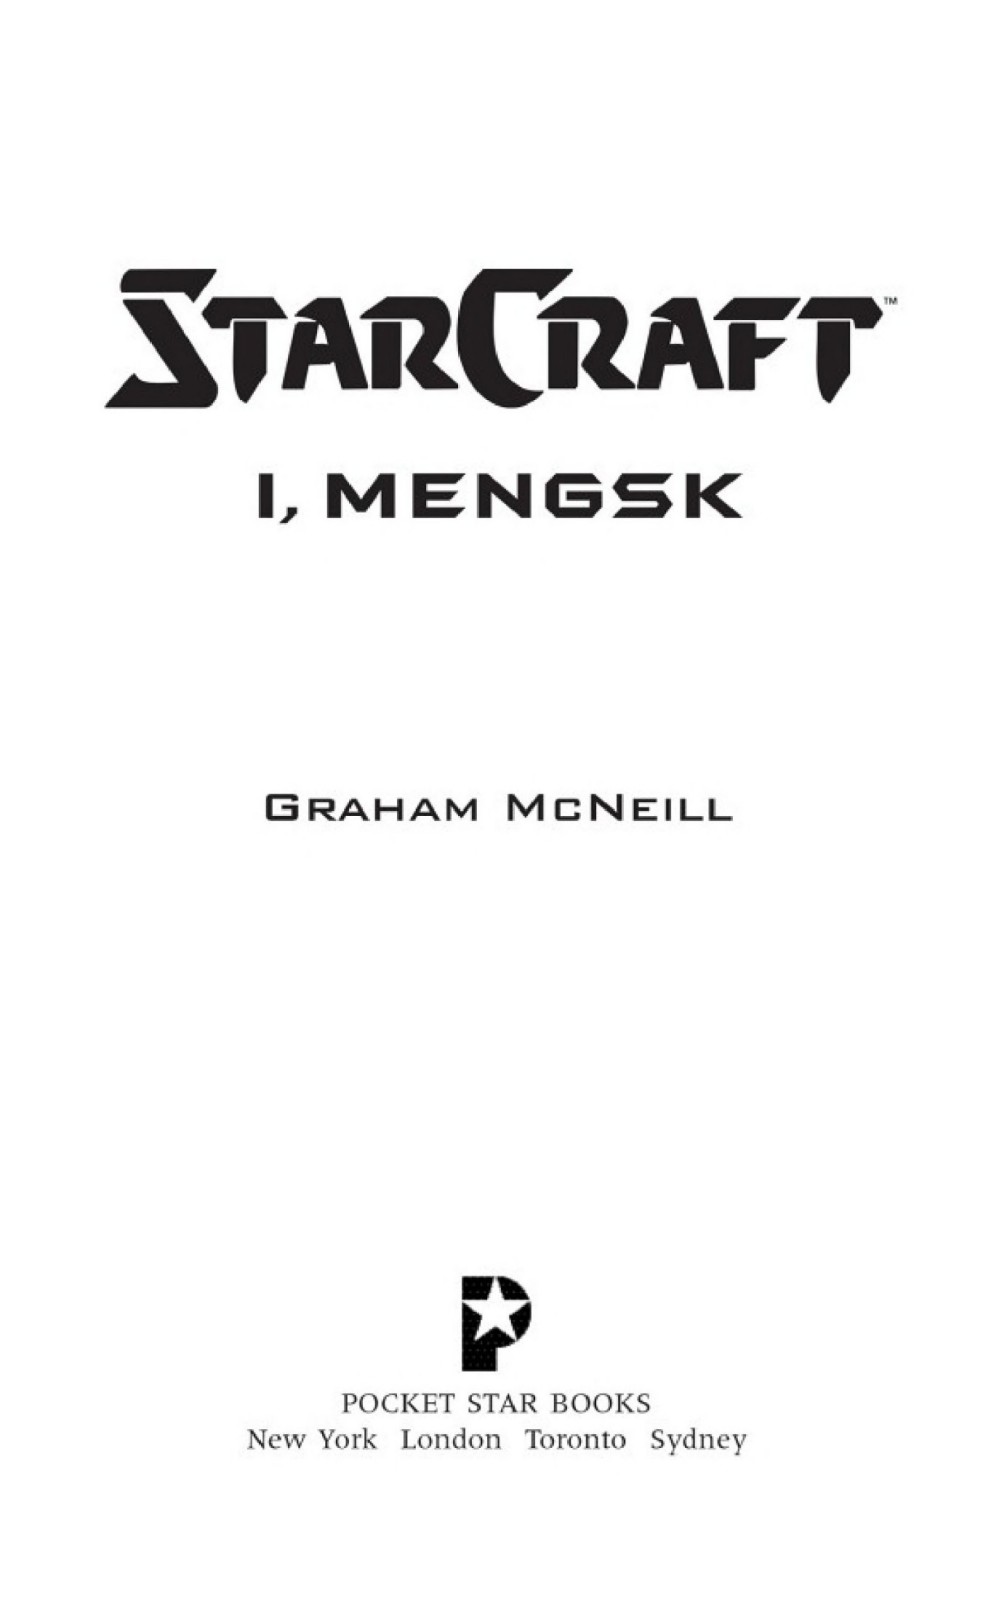 Starcraft: I, Mengsk